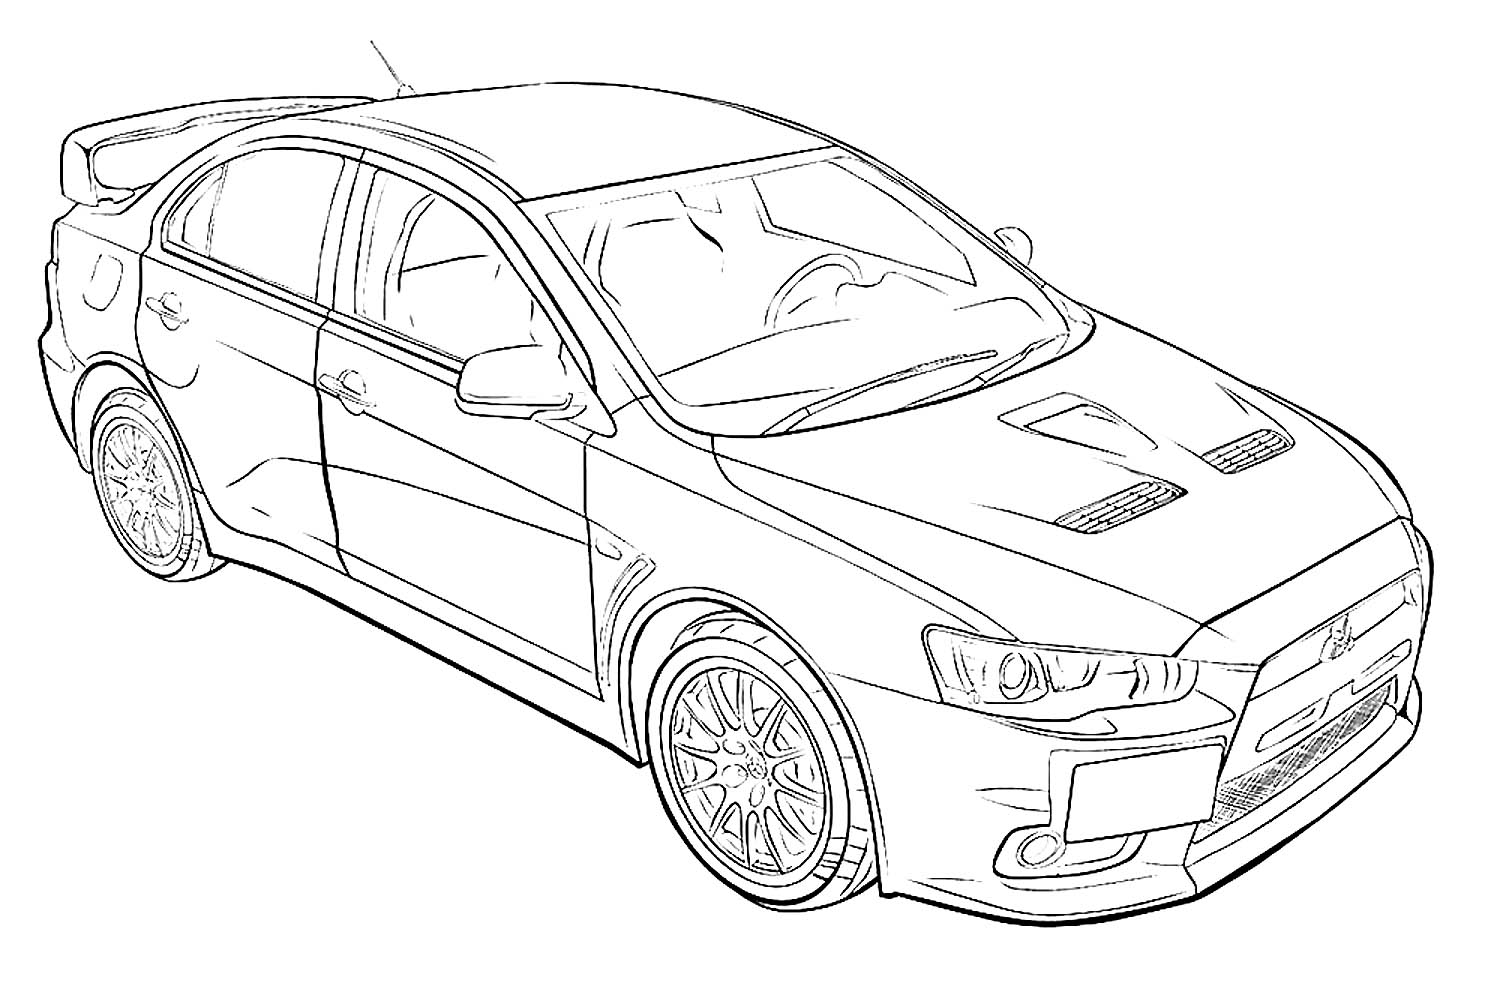 Как нарисовать машину Mitsubishi Pajero Pinin карандашом поэтапно